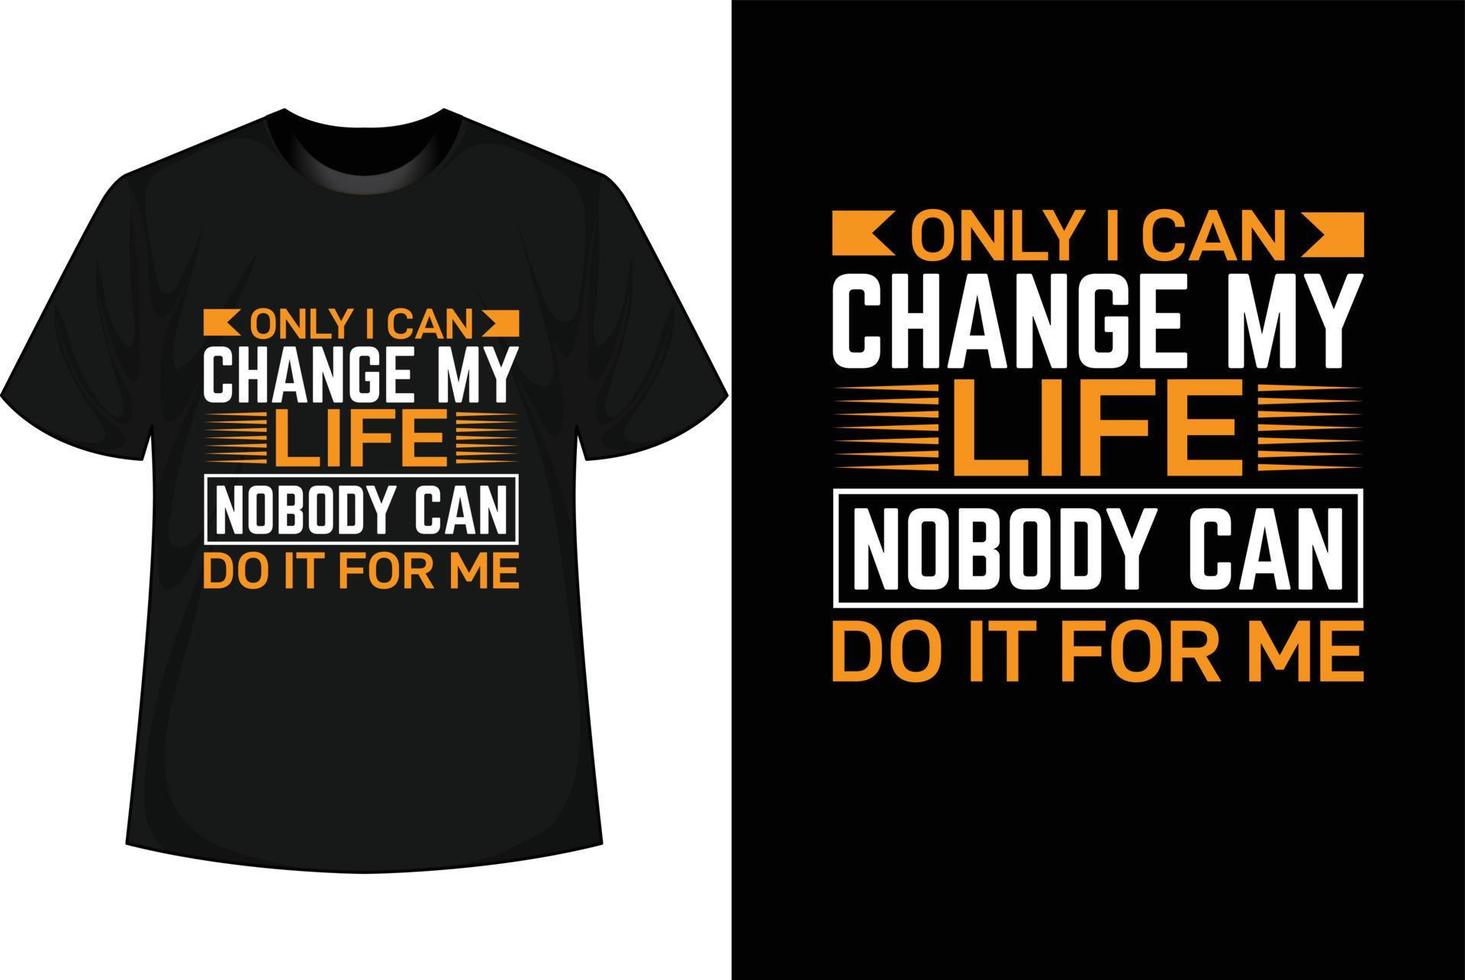 nur ich kann mein leben ändern niemand kann es für mich tun motivierendes t-shirt design vektor